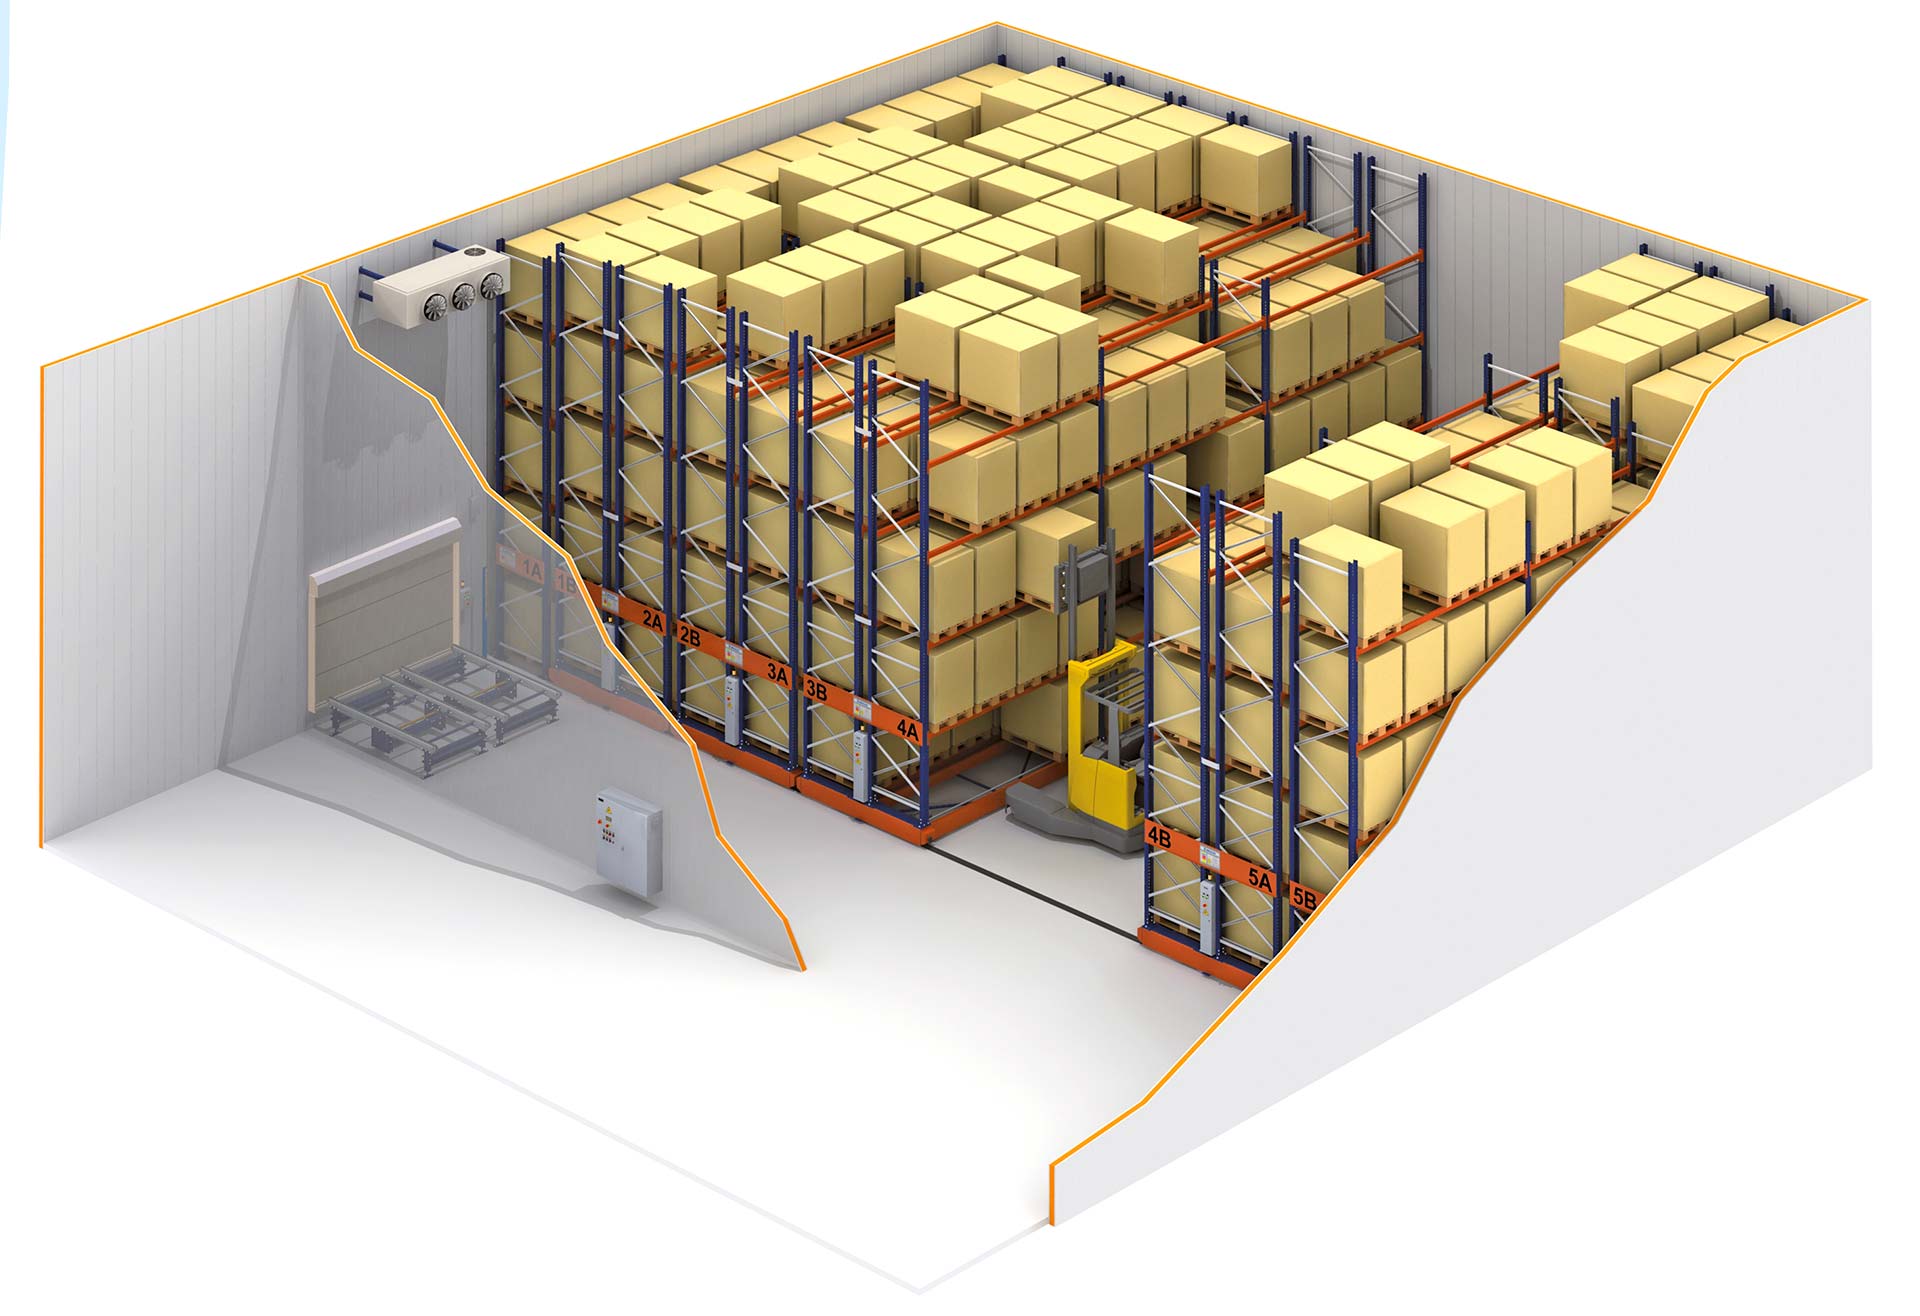 V chladiacich skladoch zaručujú maximálne využitie skladovacej kapacity regály s pohyblivými základňami